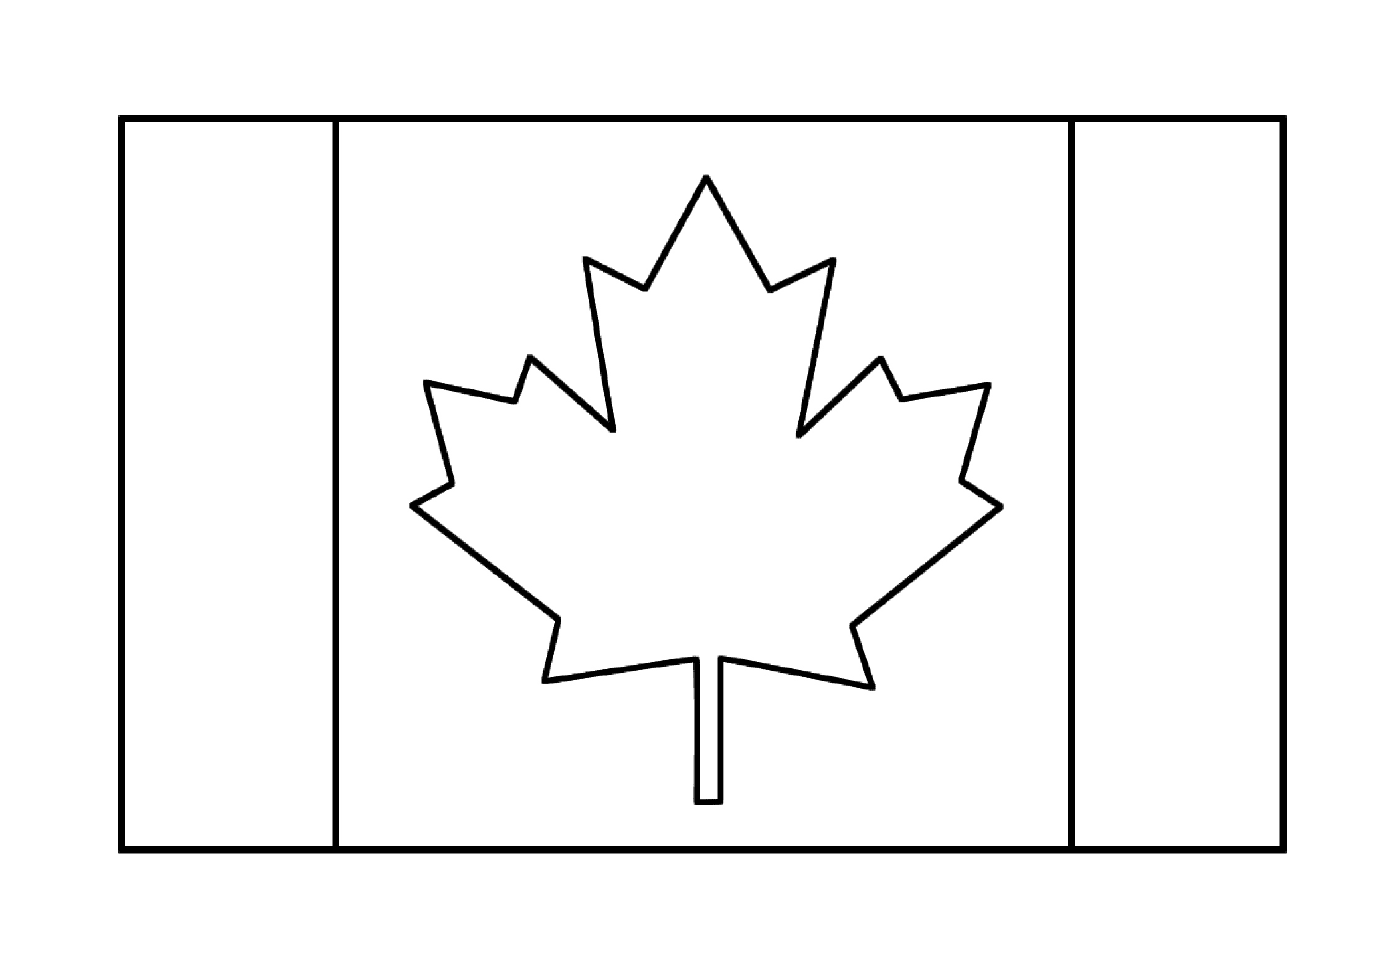  Una bandera canadiense 